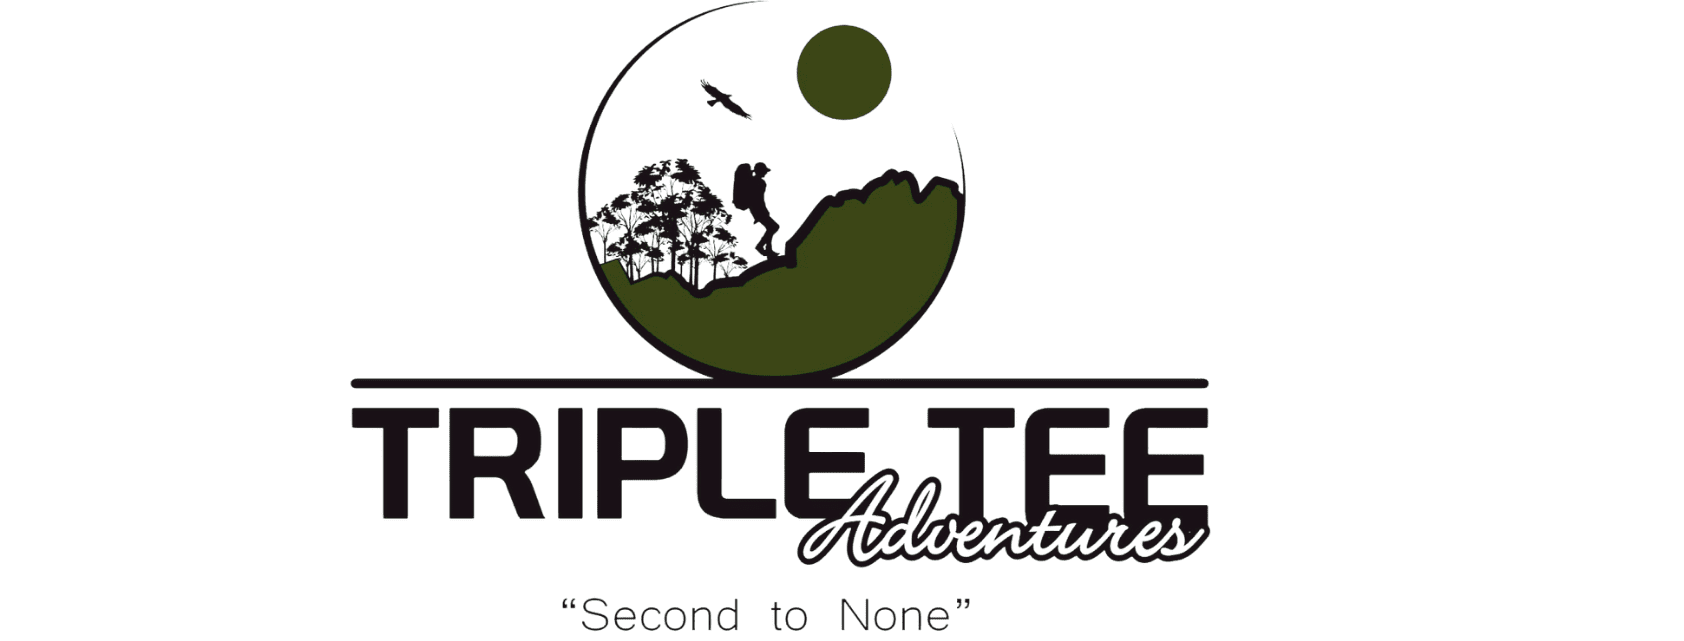 Tripletee adventures web logo by Kreative Advertising